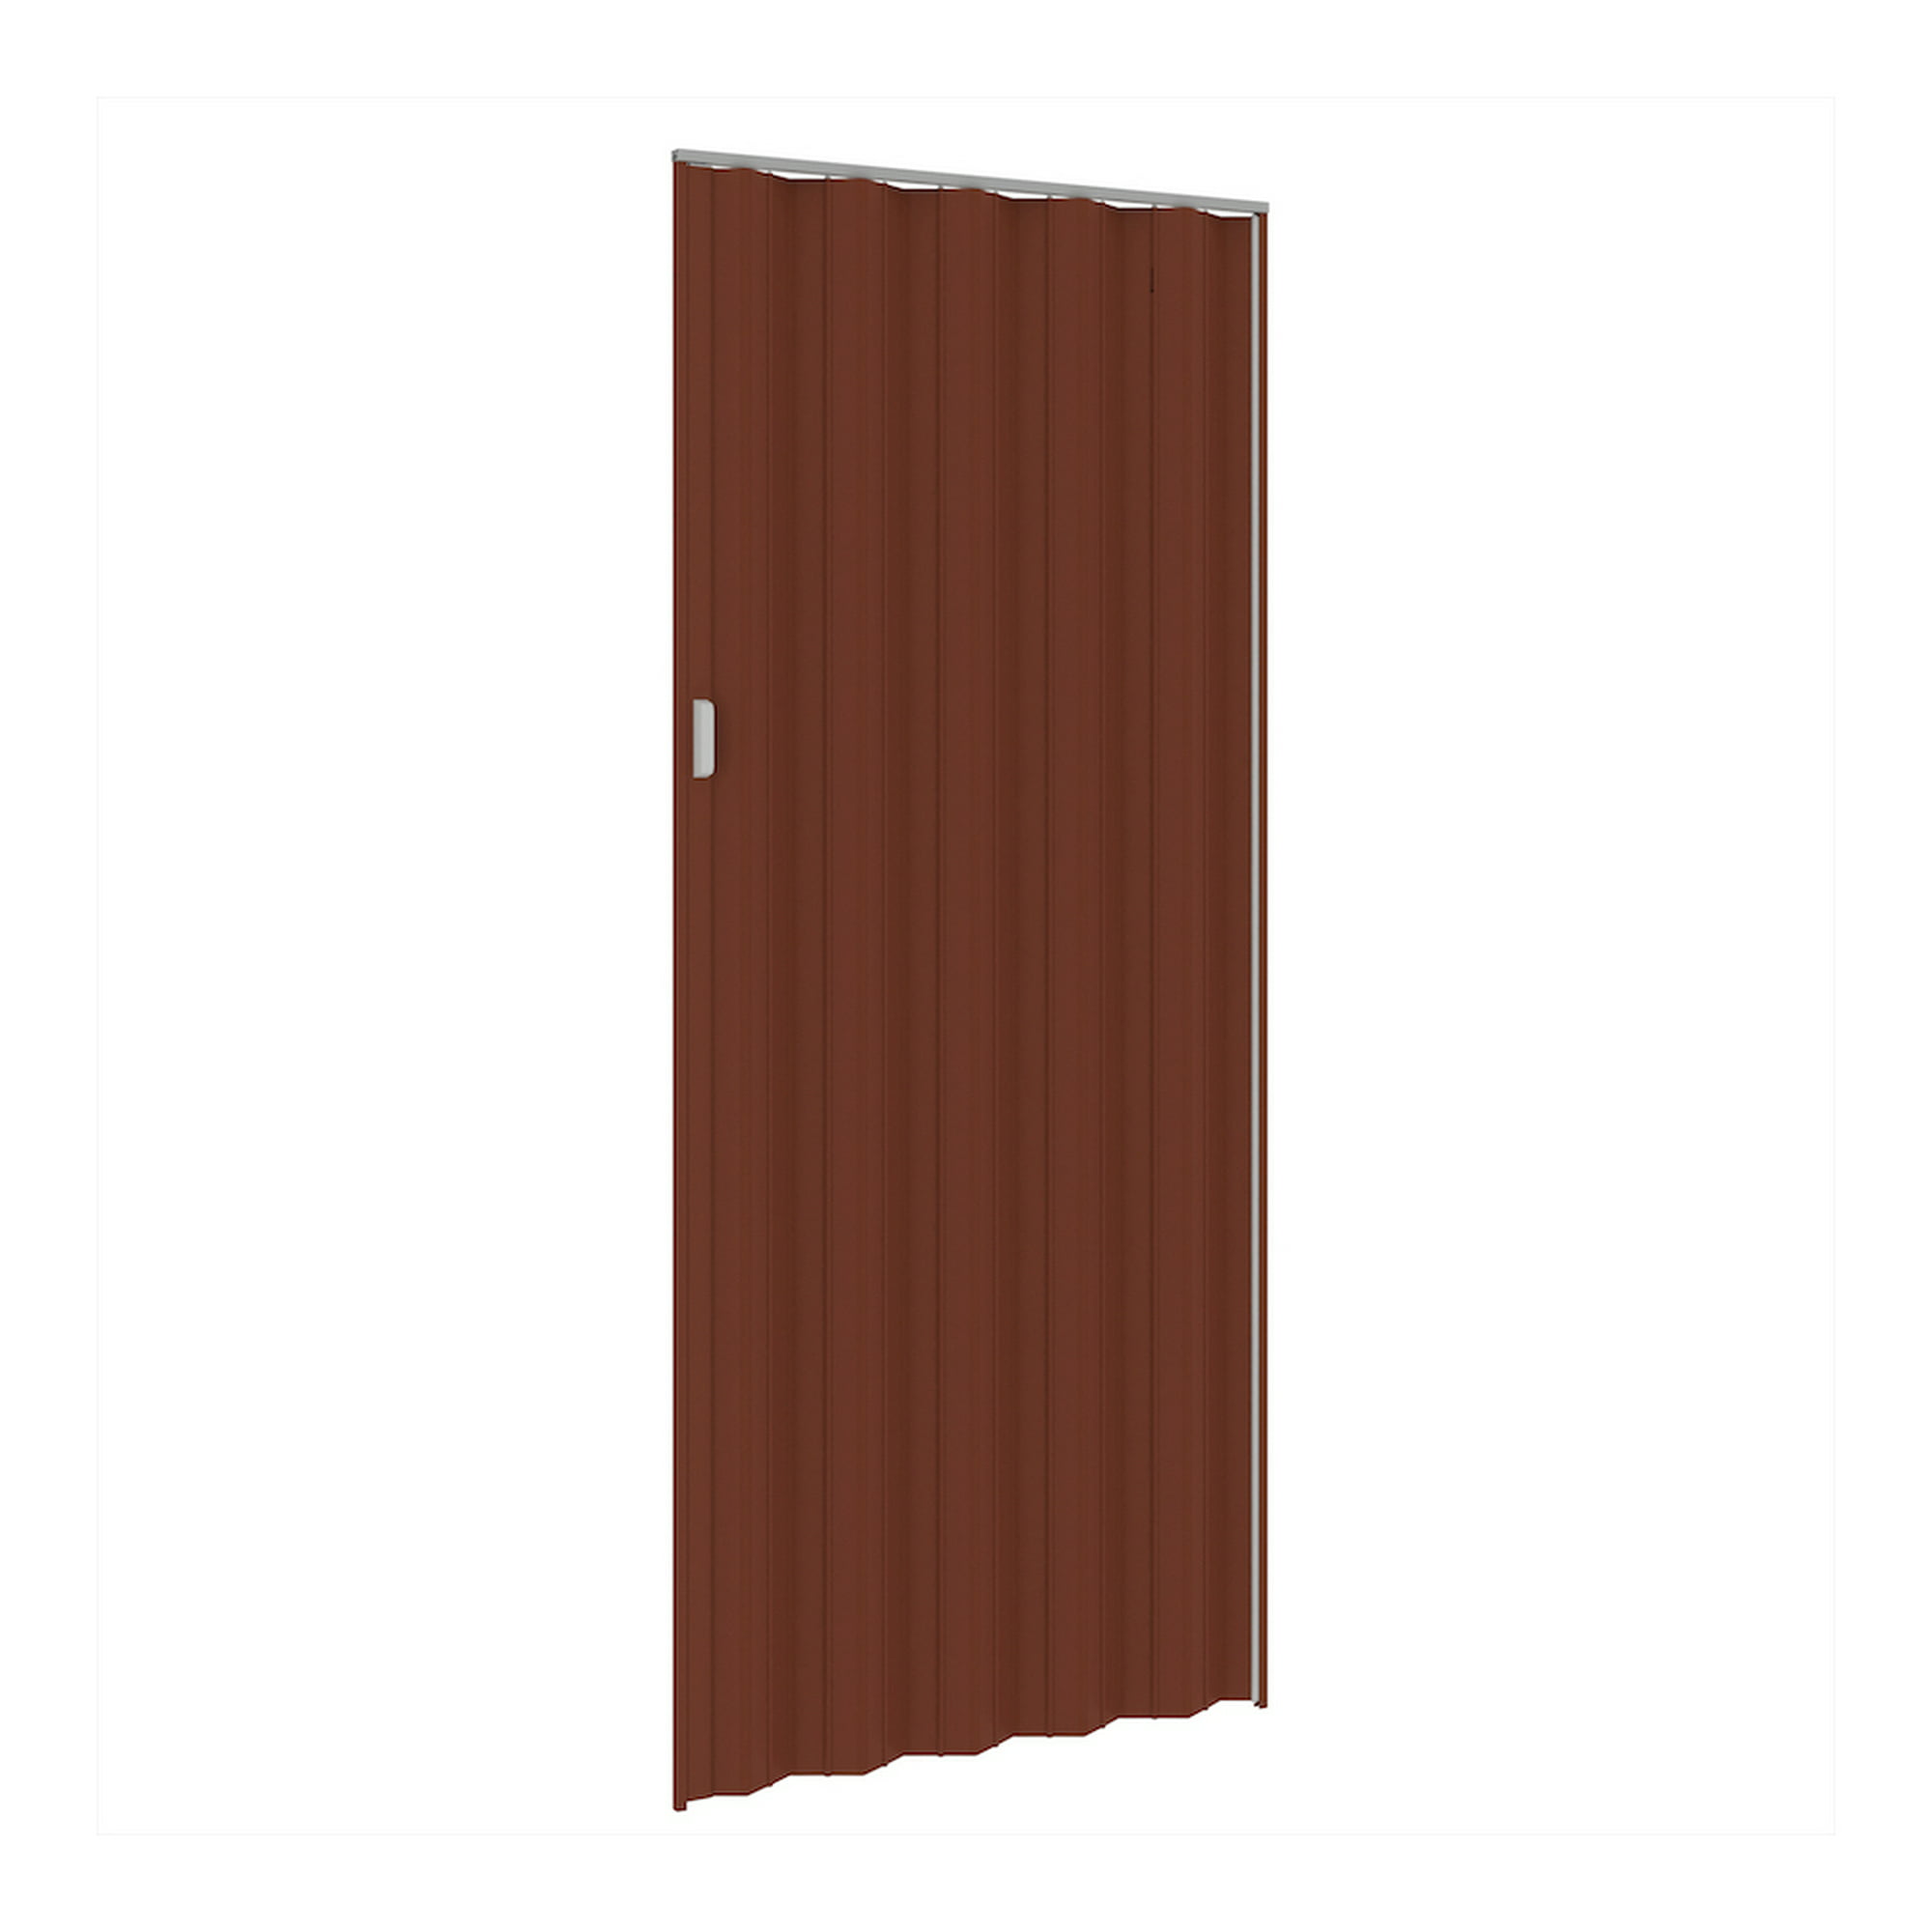 Puerta de acordeón de 2' x 80 con acabado de madera roja